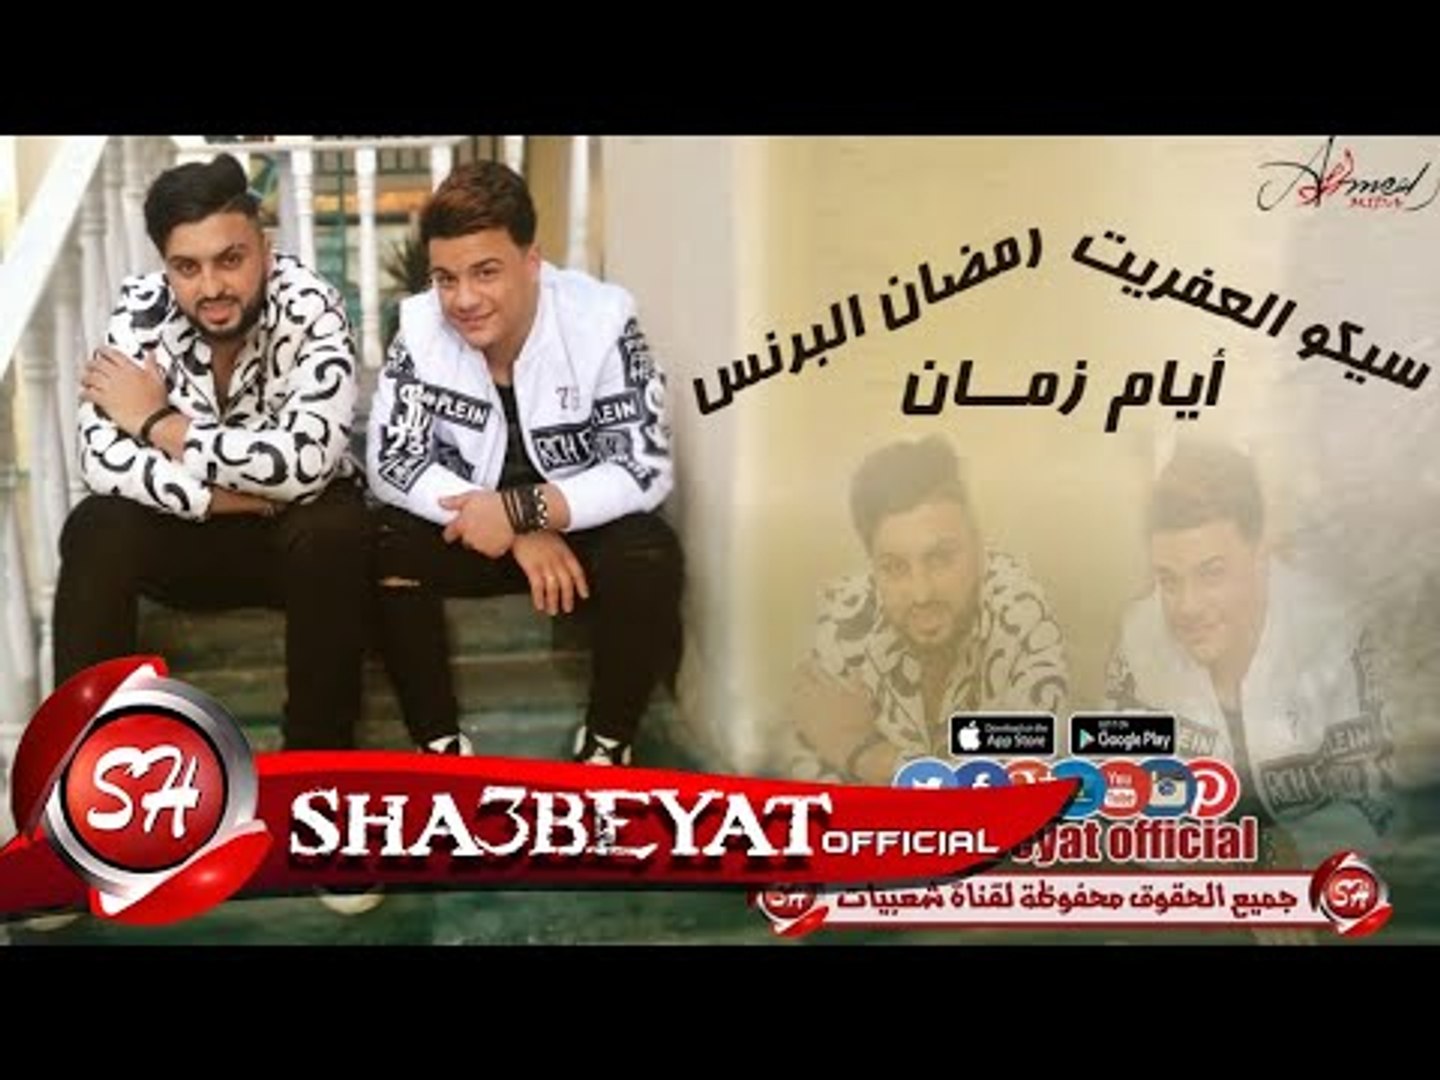 سيكو العفريت - رمضان البرنس أيام زمان اغنية جديدة 2017 حصريا على شعبيات -  video Dailymotion